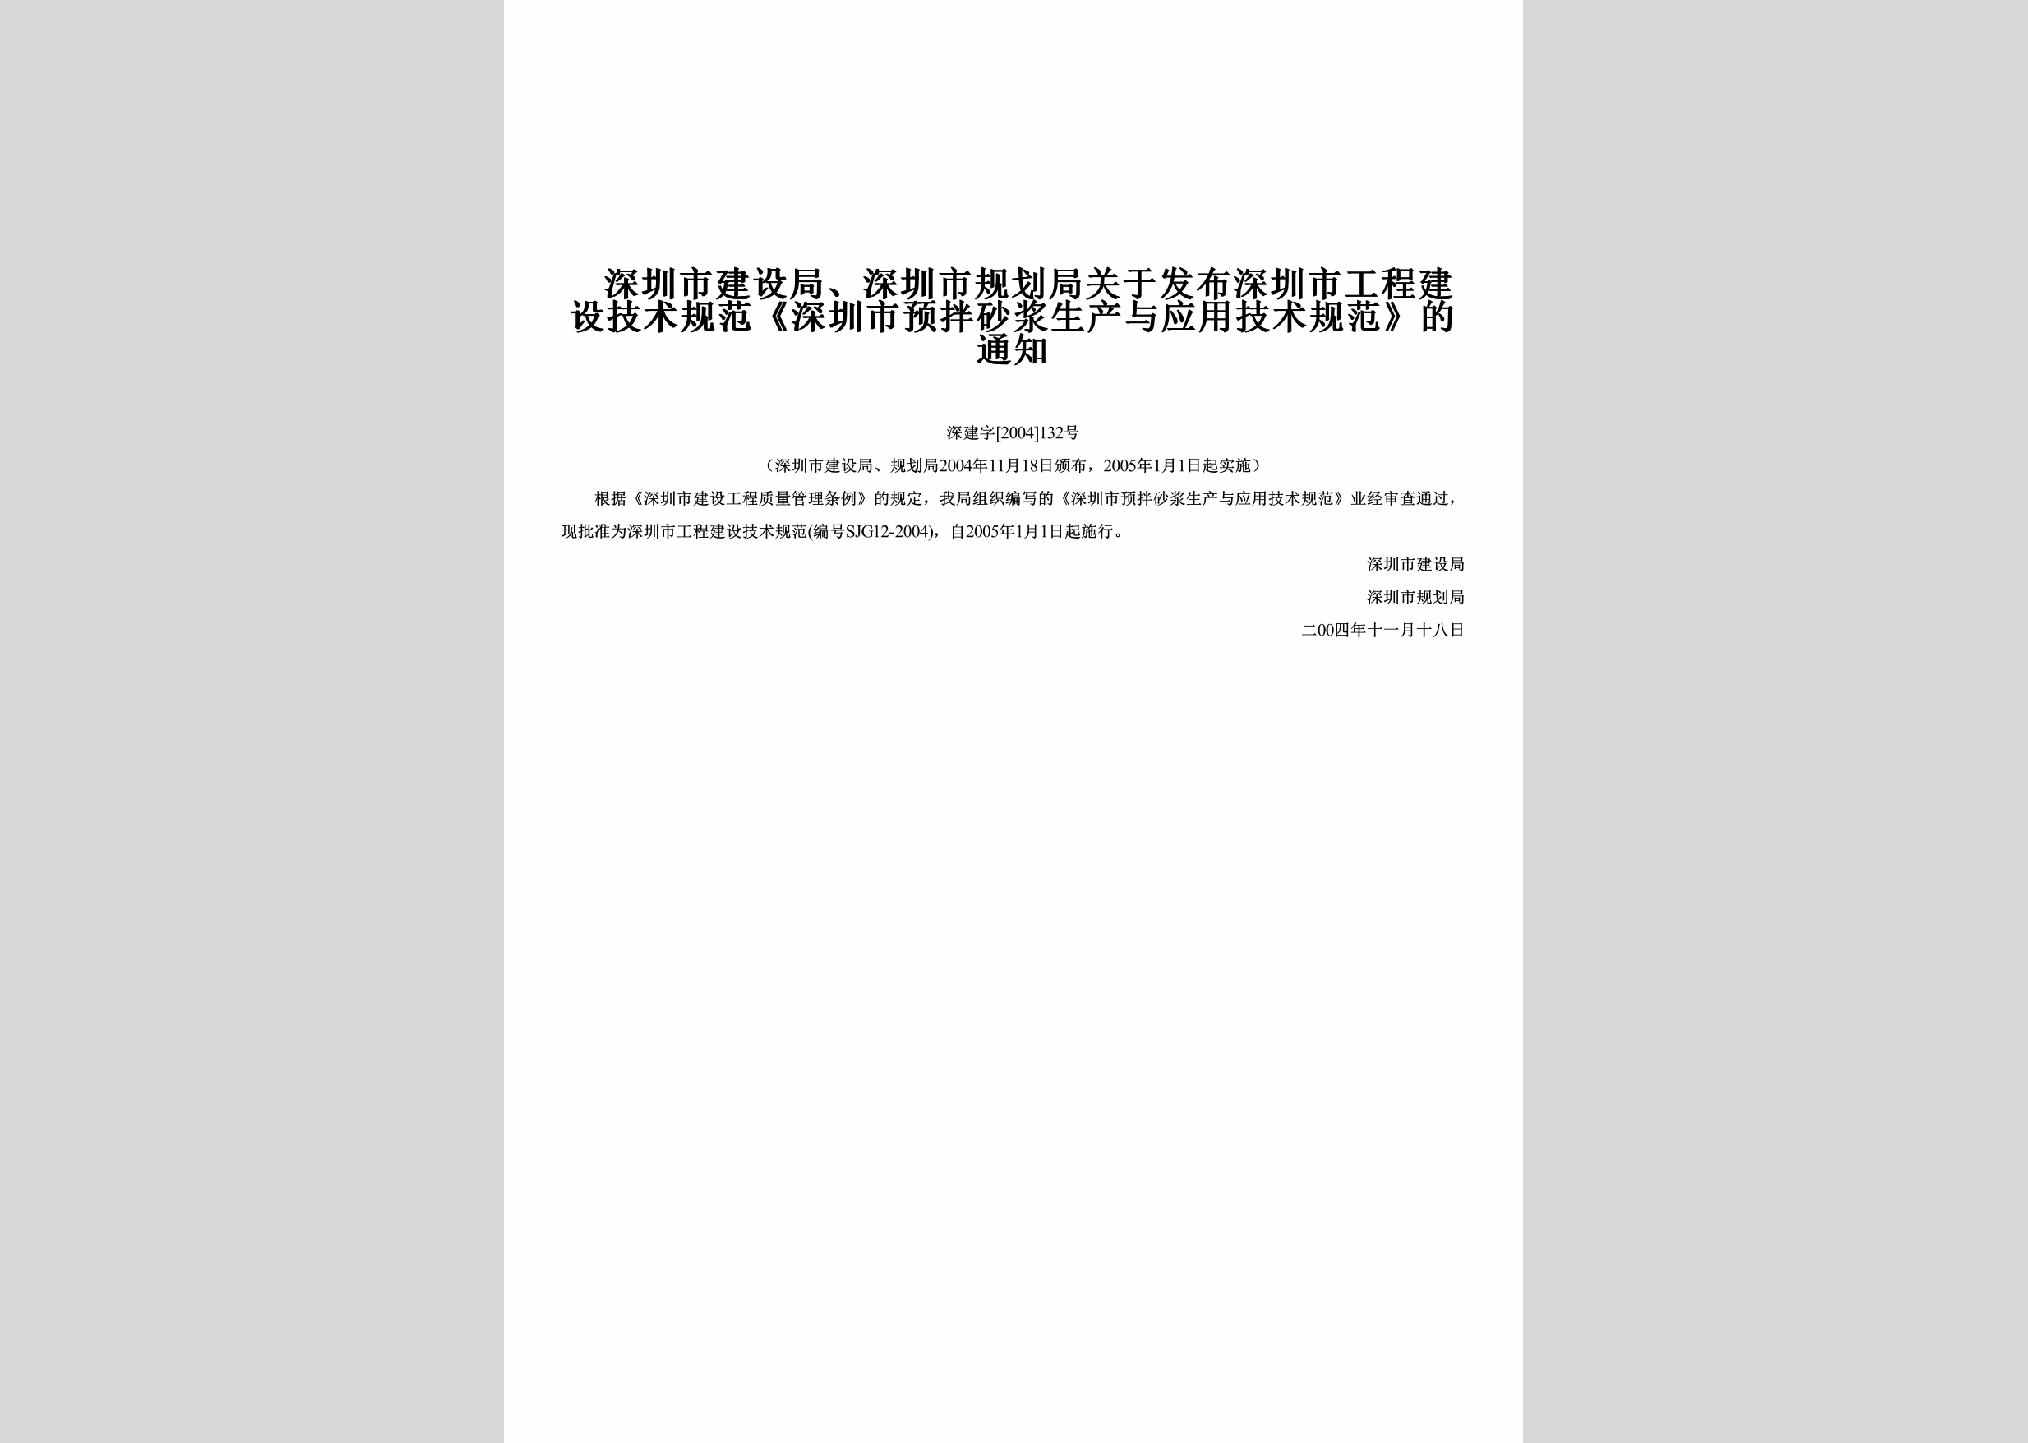 深建字[2004]132号：关于发布深圳市工程建设技术规范《深圳市预拌砂浆生产与应用技术规范》的通知